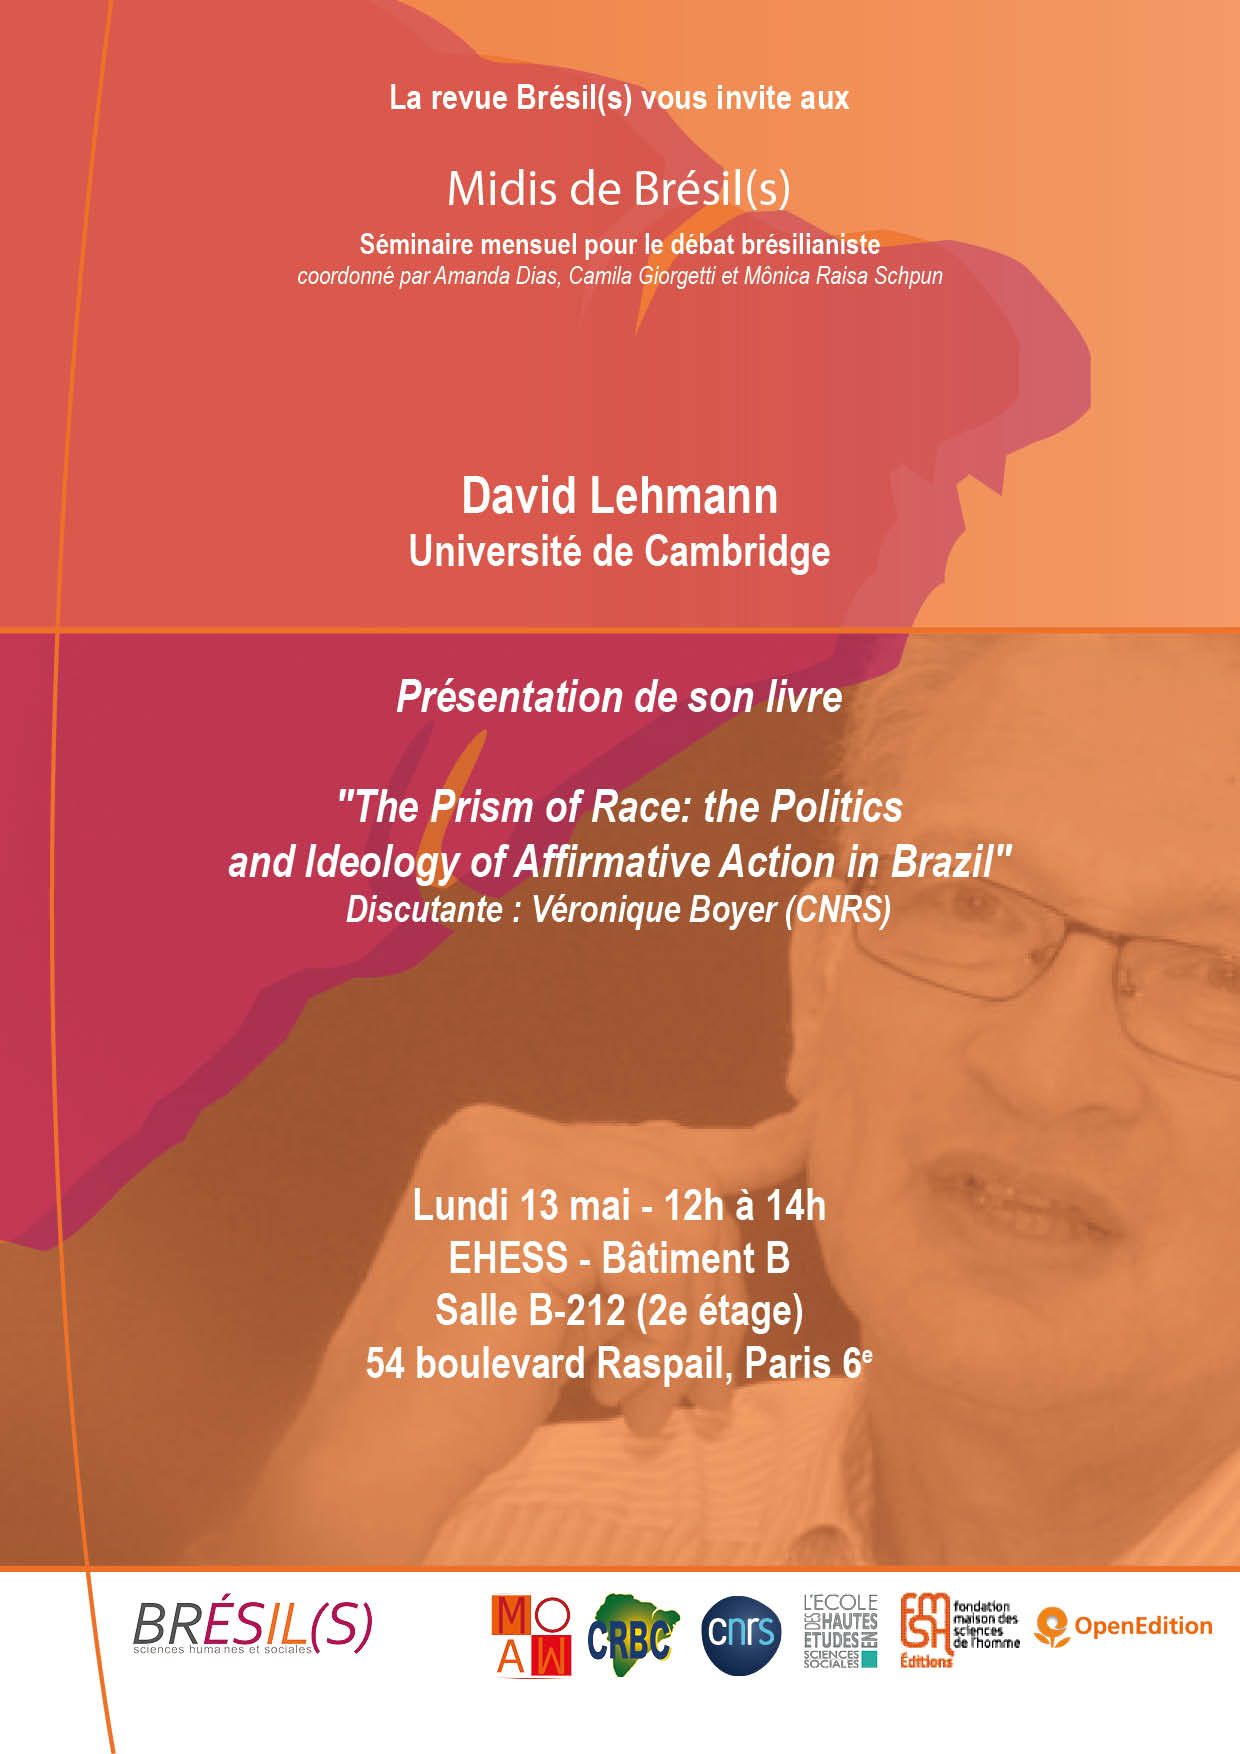 Les Midis de Brésil(s) - David Lehmann, professeur à l'Université de Cambridge / The Prism of Race